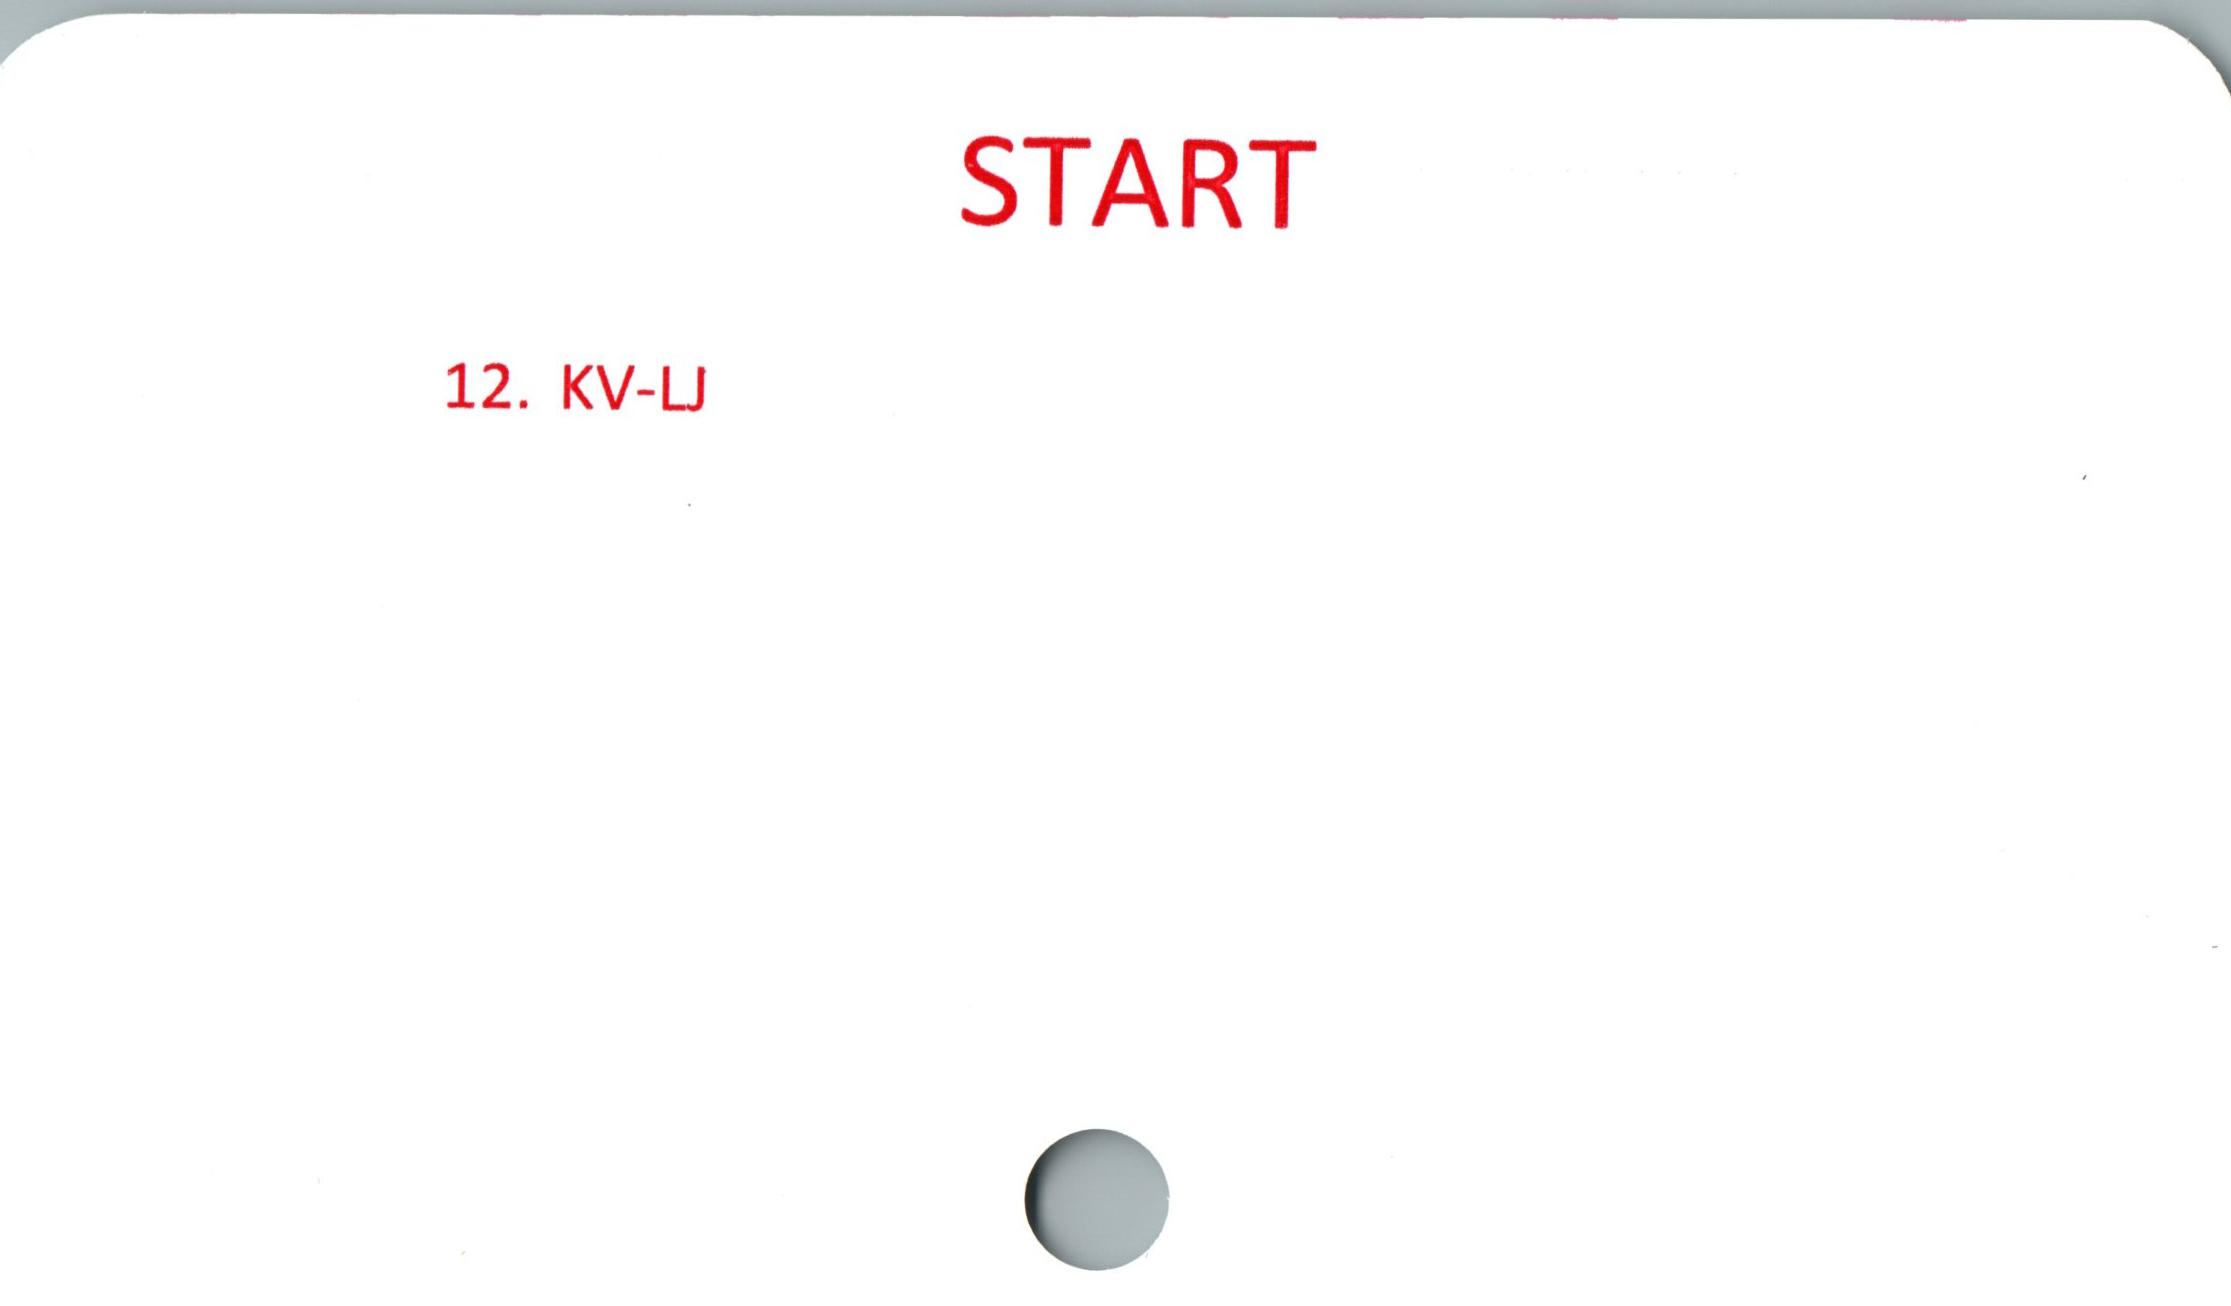 START START

12. KV-LJ